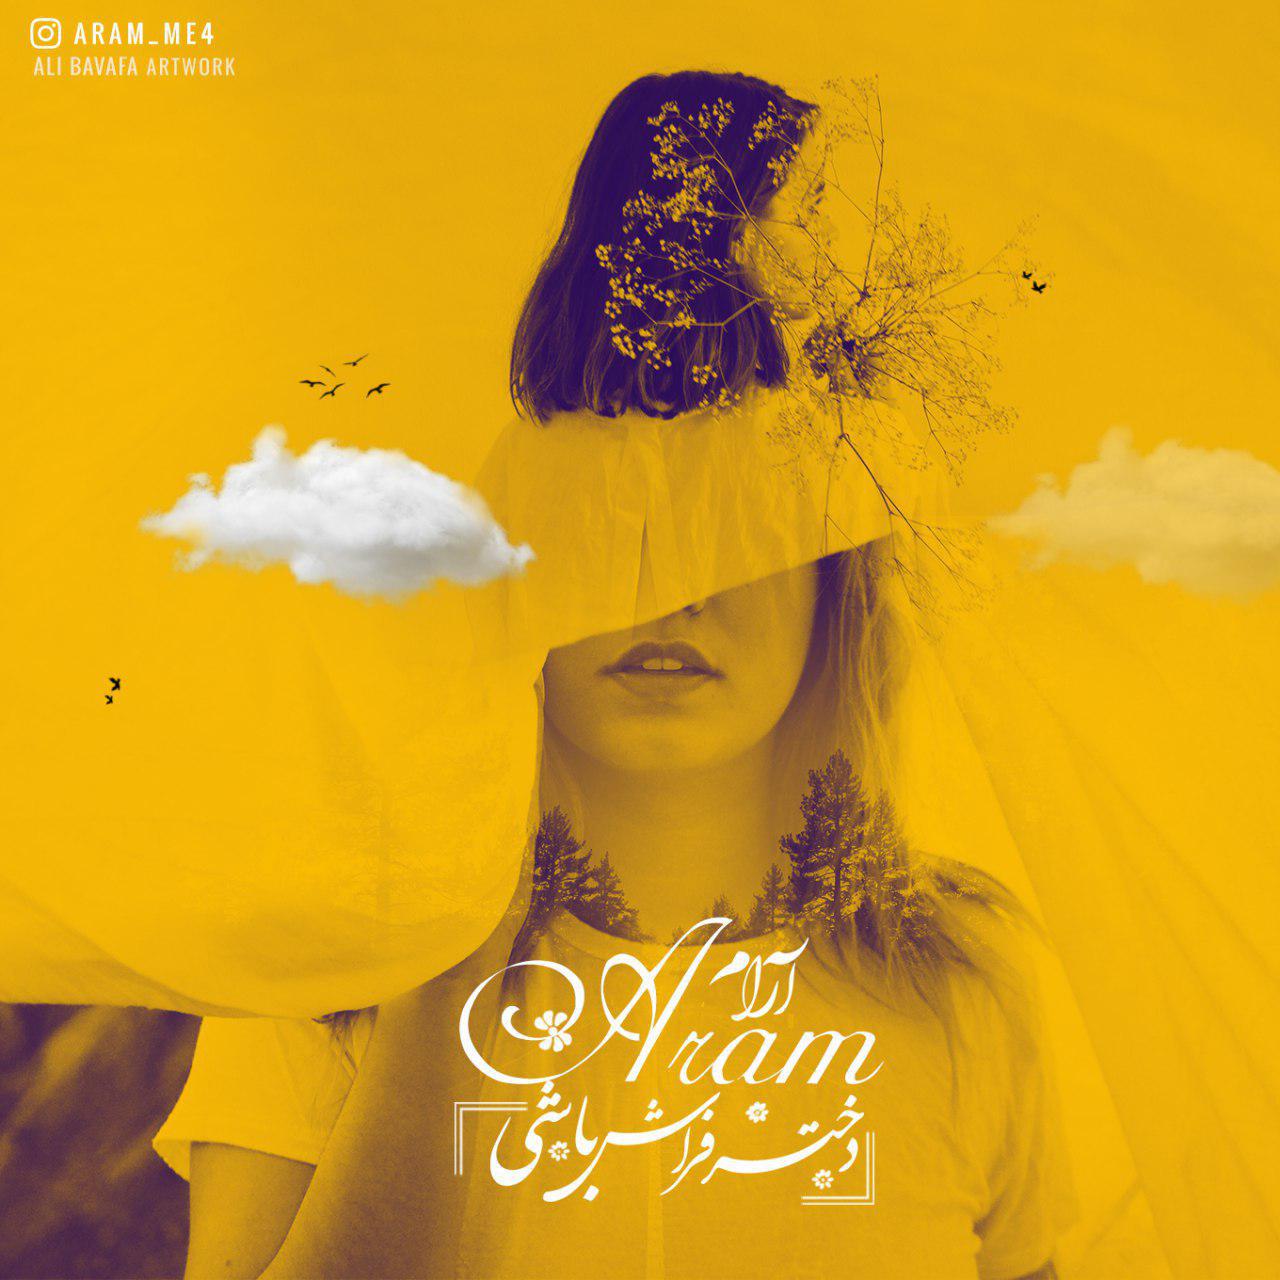  دانلود آهنگ جدید آرام - دختر فراش باش | Download New Music By Aram - Dokhtar Farash Bashi